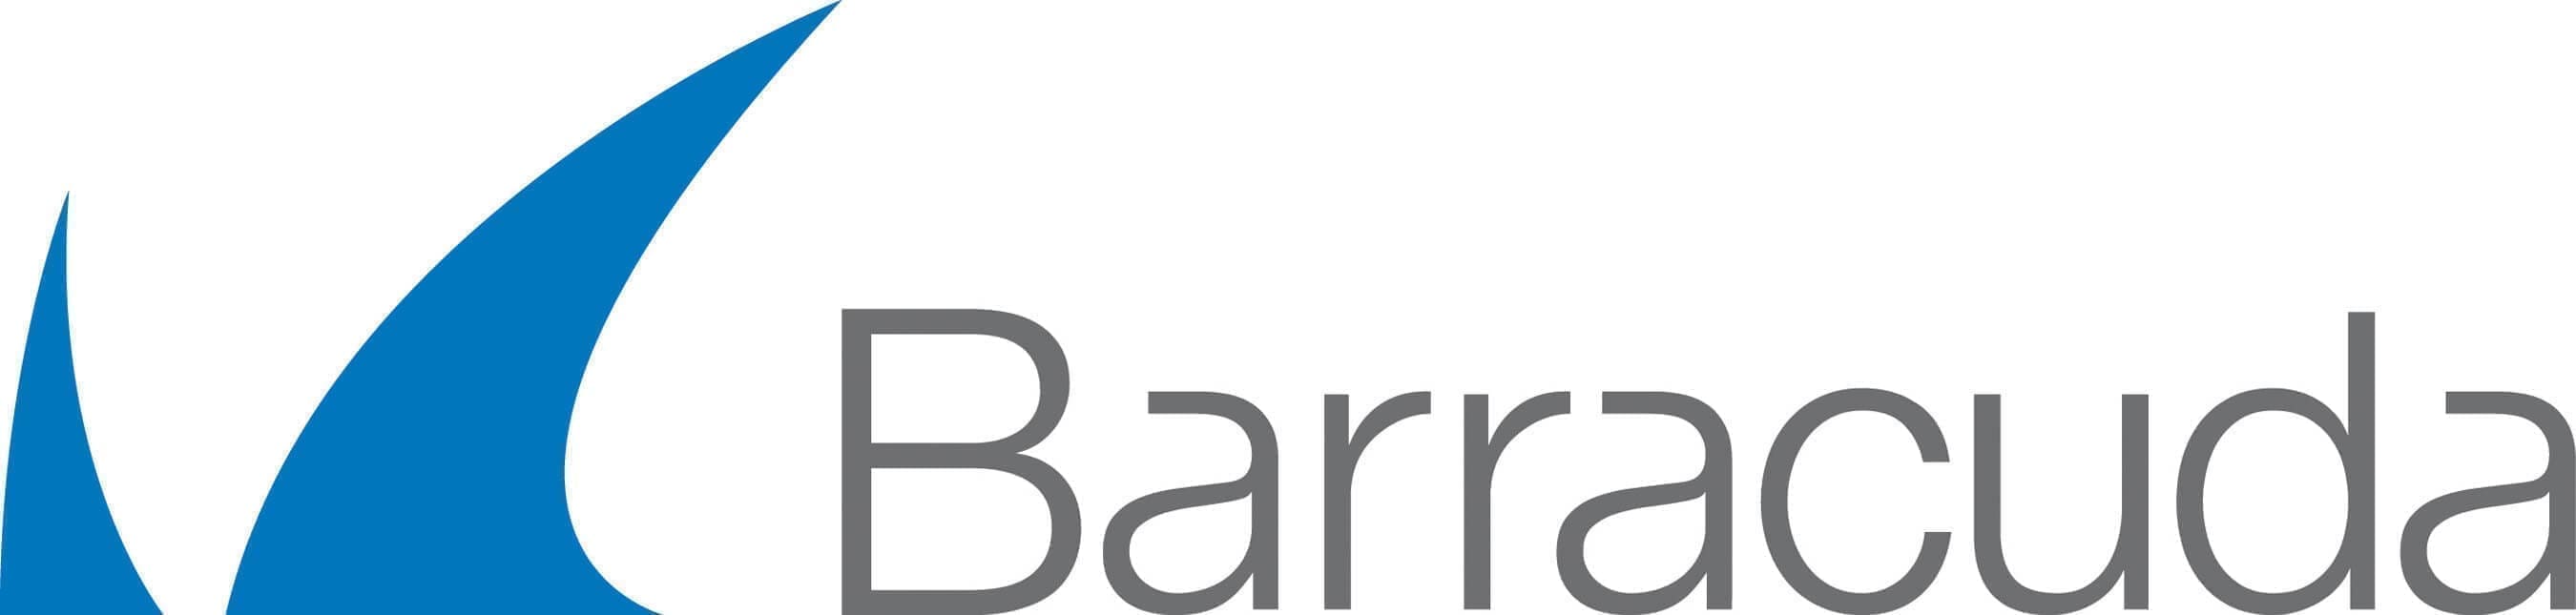 A logo of the company barra